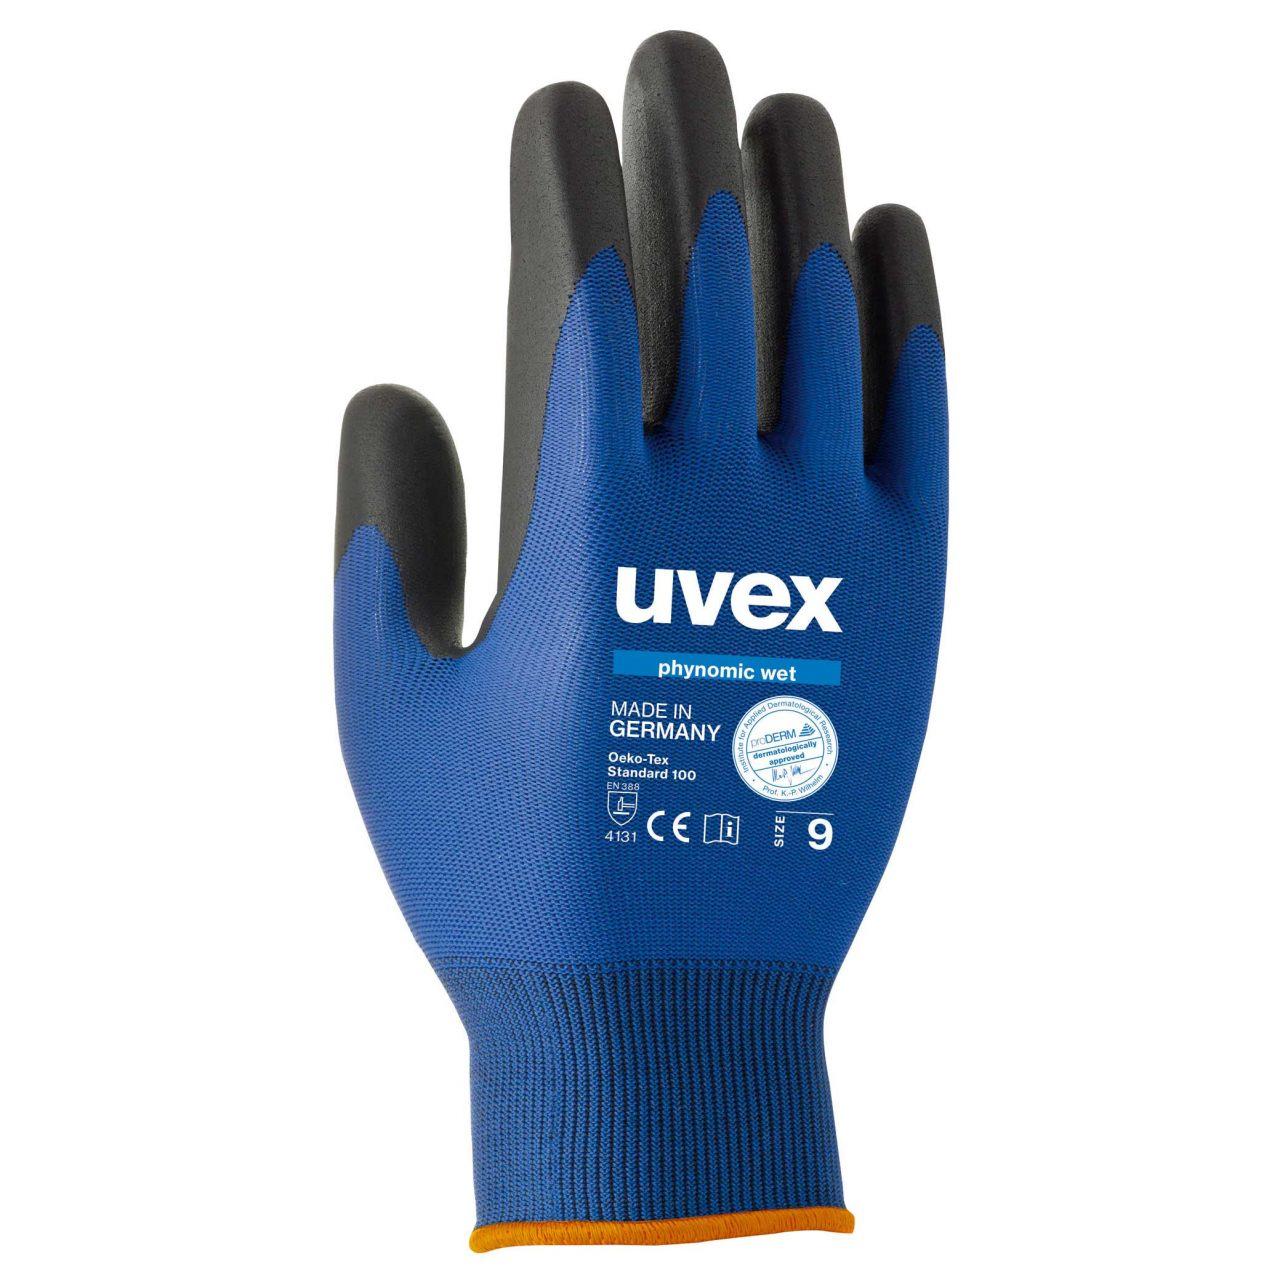 Защитные перчатки uvex финомик вет